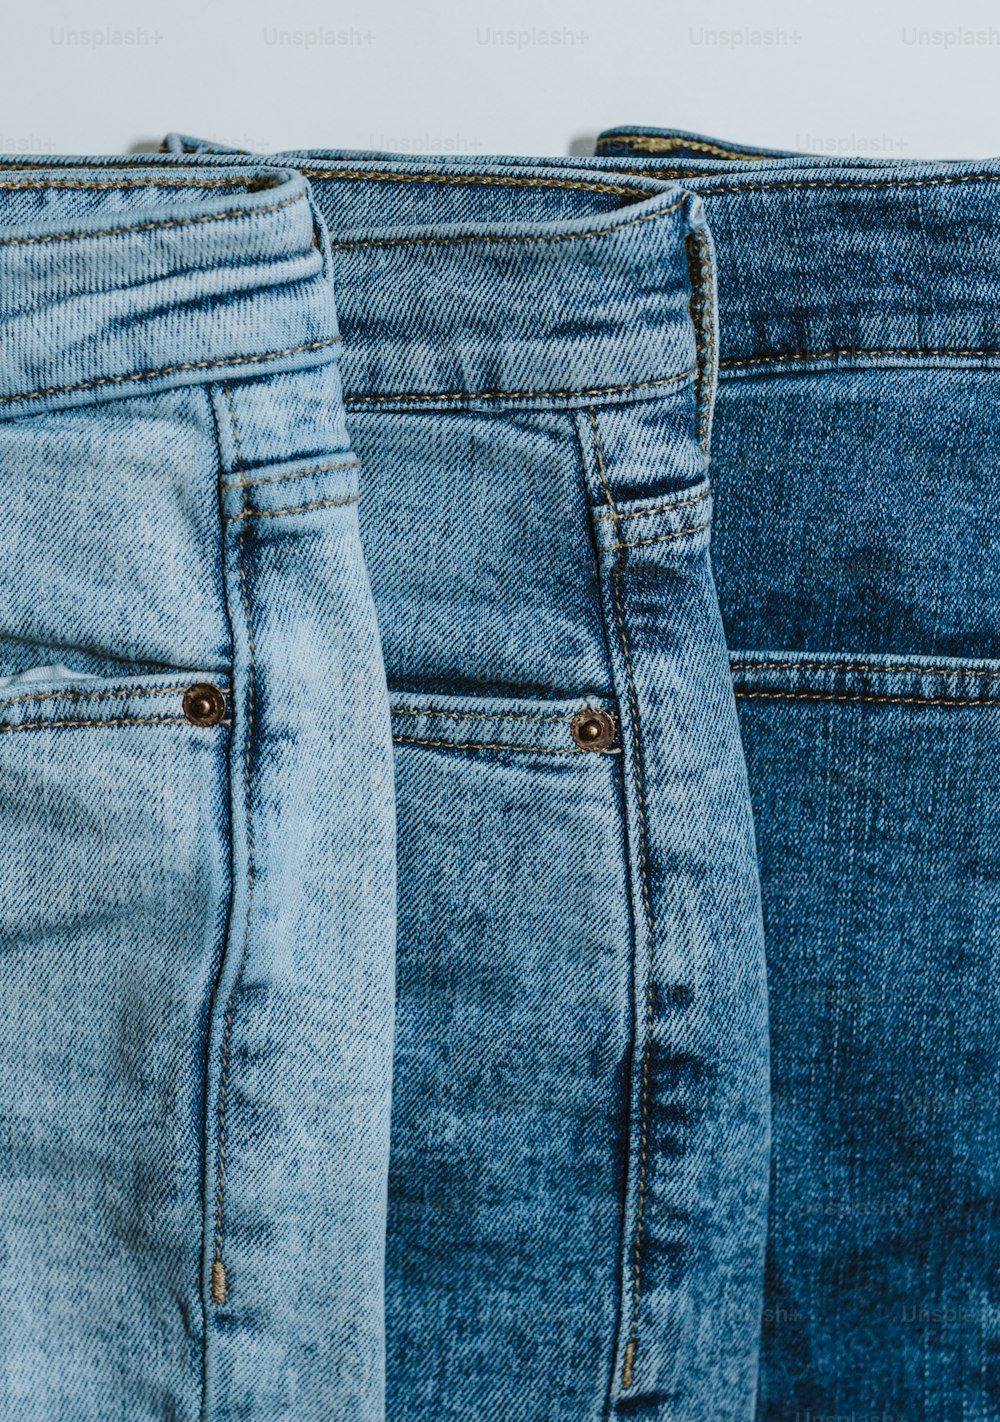 Tres pares de jeans están alineados en una fila